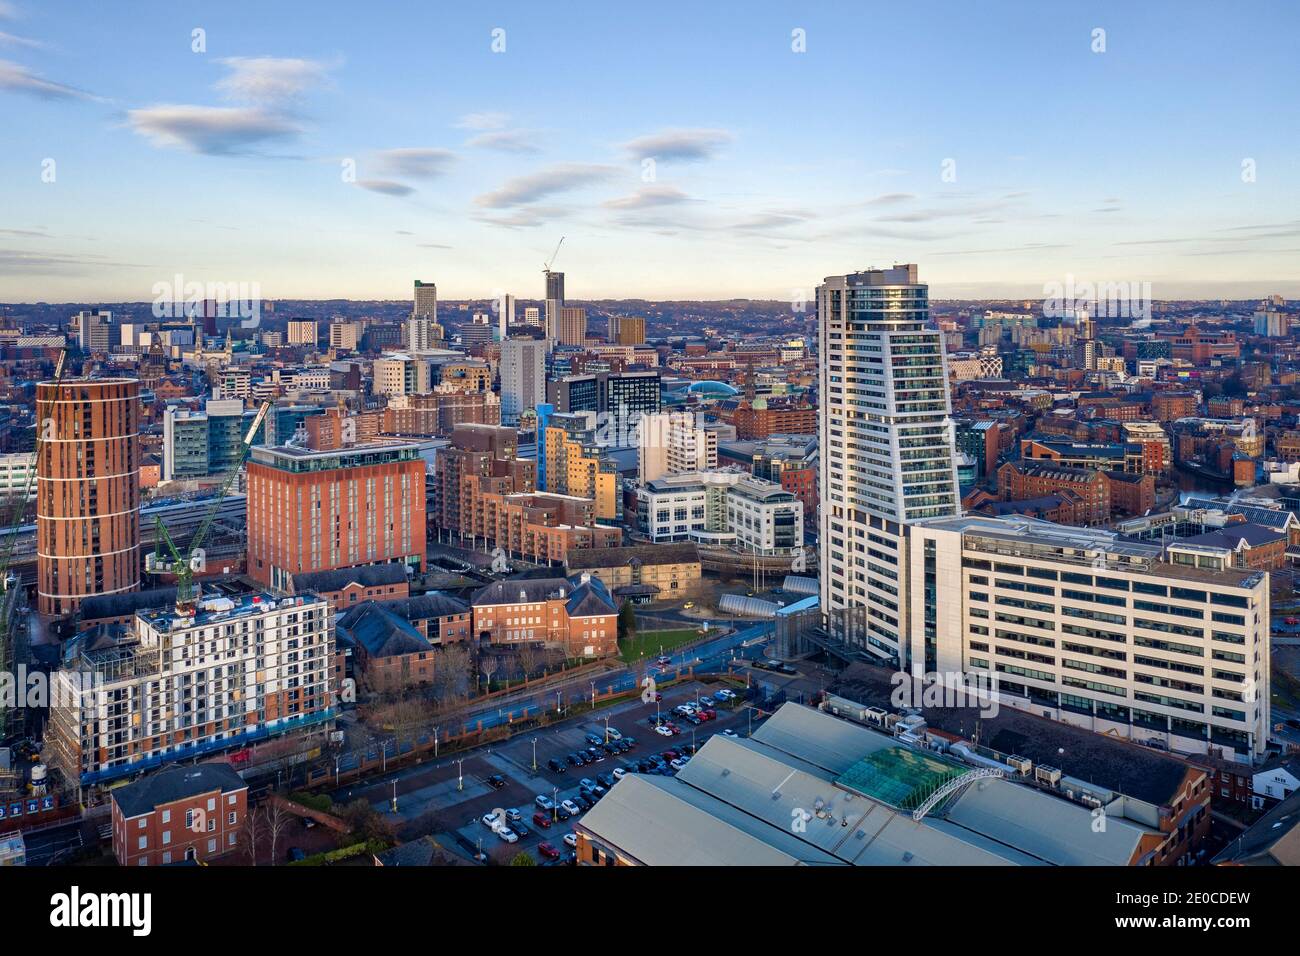 Centre ville de Leeds au crépuscule, vue aérienne de près de Bridgewater place donnant sur le centre ville, appartements, détail, hôtels. Yorkshire, Angleterre Banque D'Images